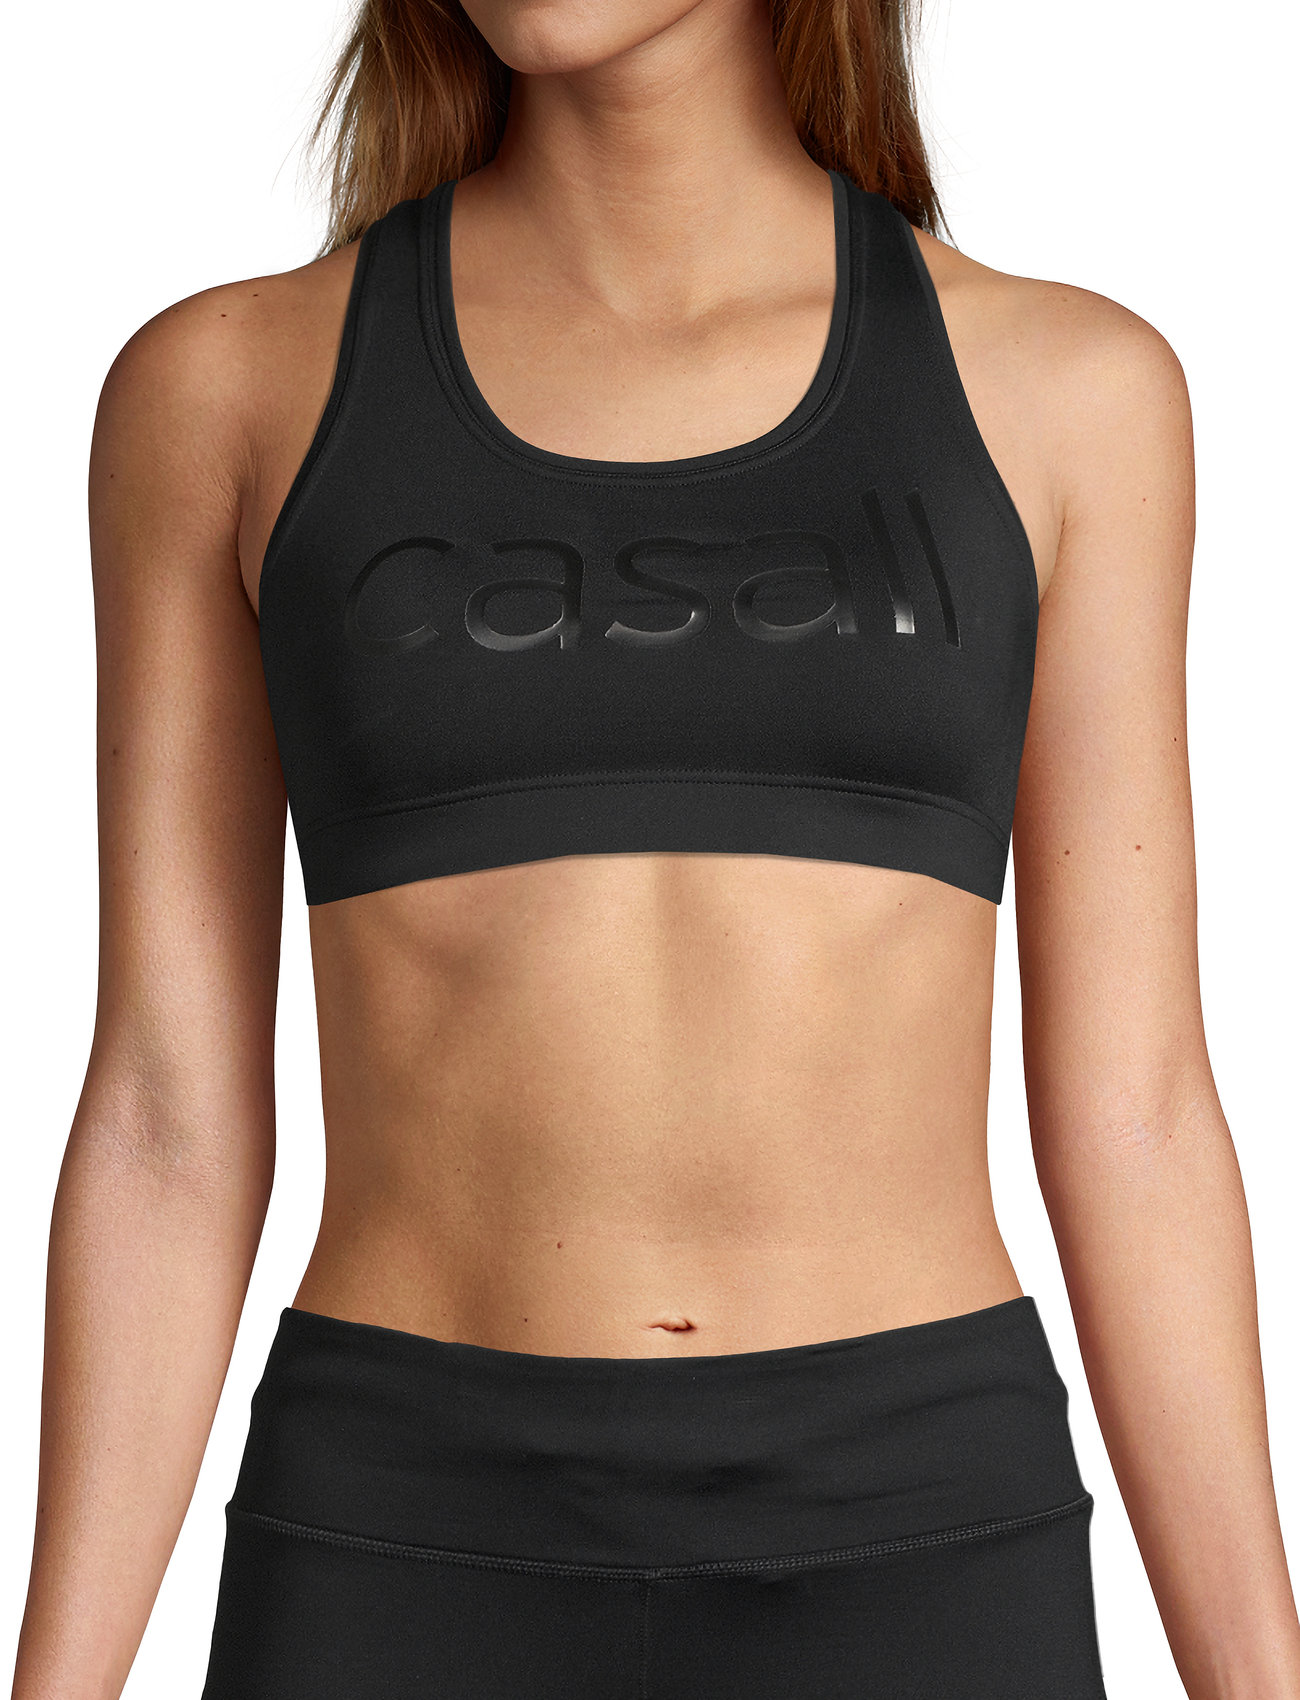 Casall - Iconic wool sports bra - wysokie - black logo - 0